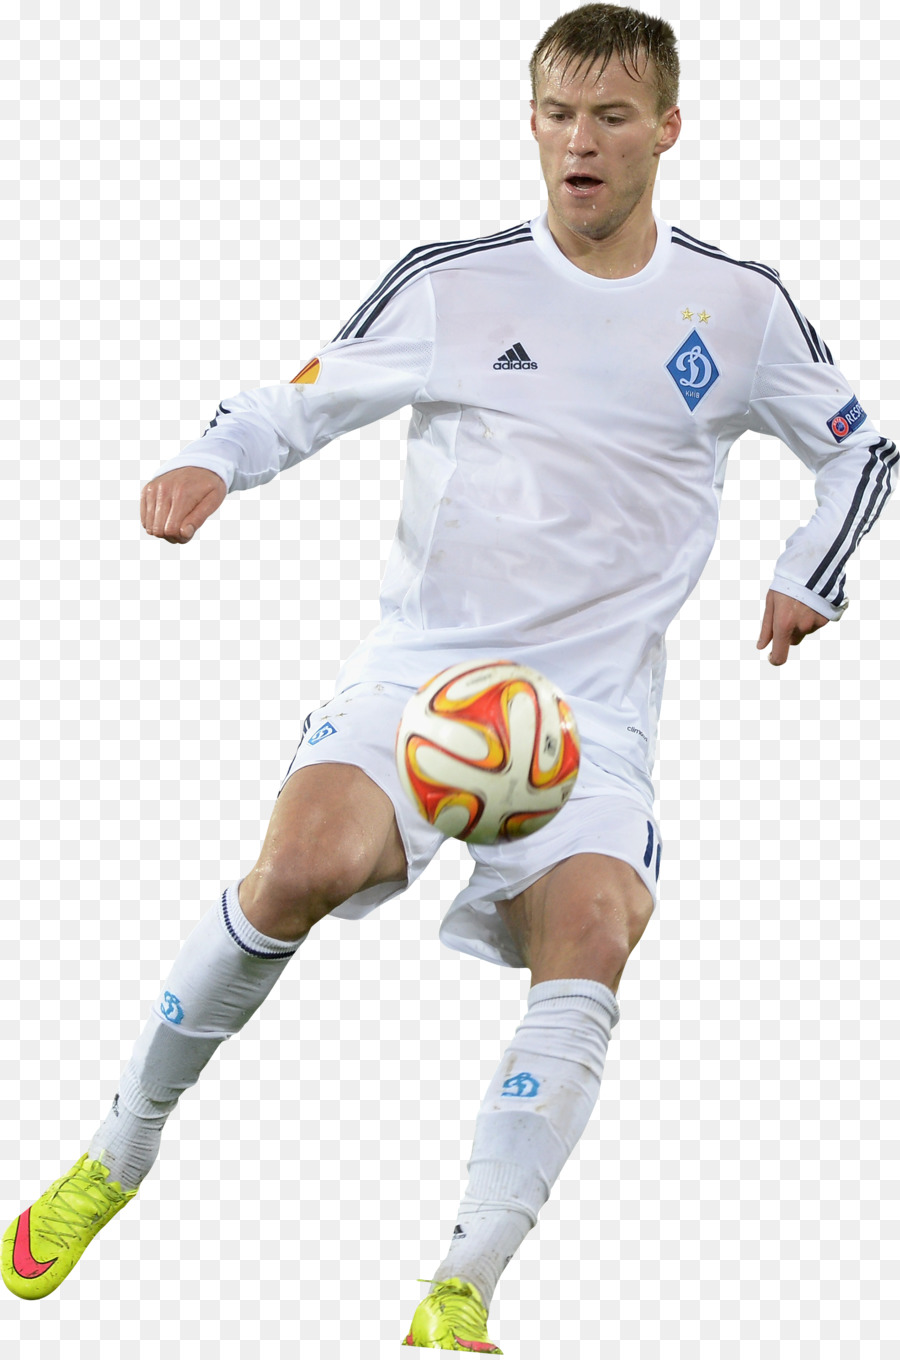 Andriy Ở cầu thủ bóng Đá môn thể thao đồng Đội Ukraine đội bóng đá quốc gia - Pháp